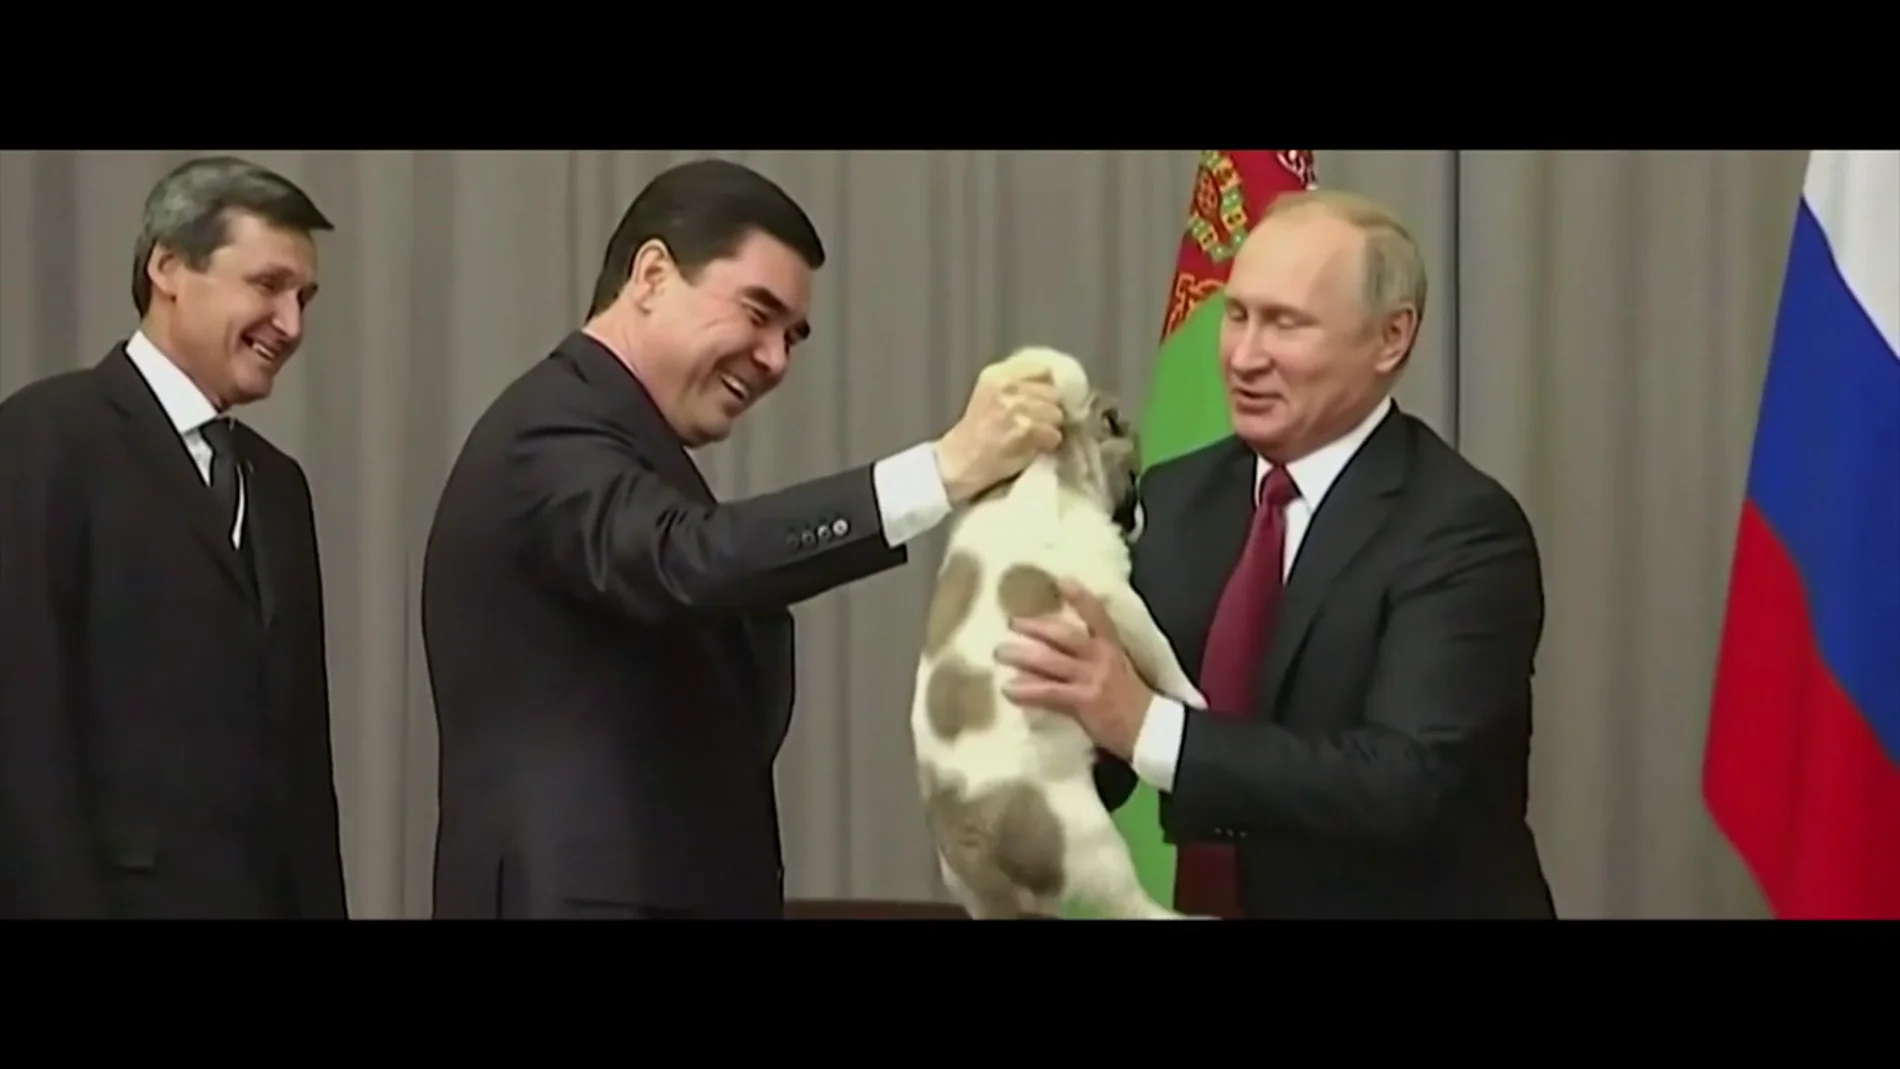 Jalis de la Serna, al saber que el presidente de Turkmenistán regaló un perro a Putin: "Ojalá los trate mejor que a las personas"